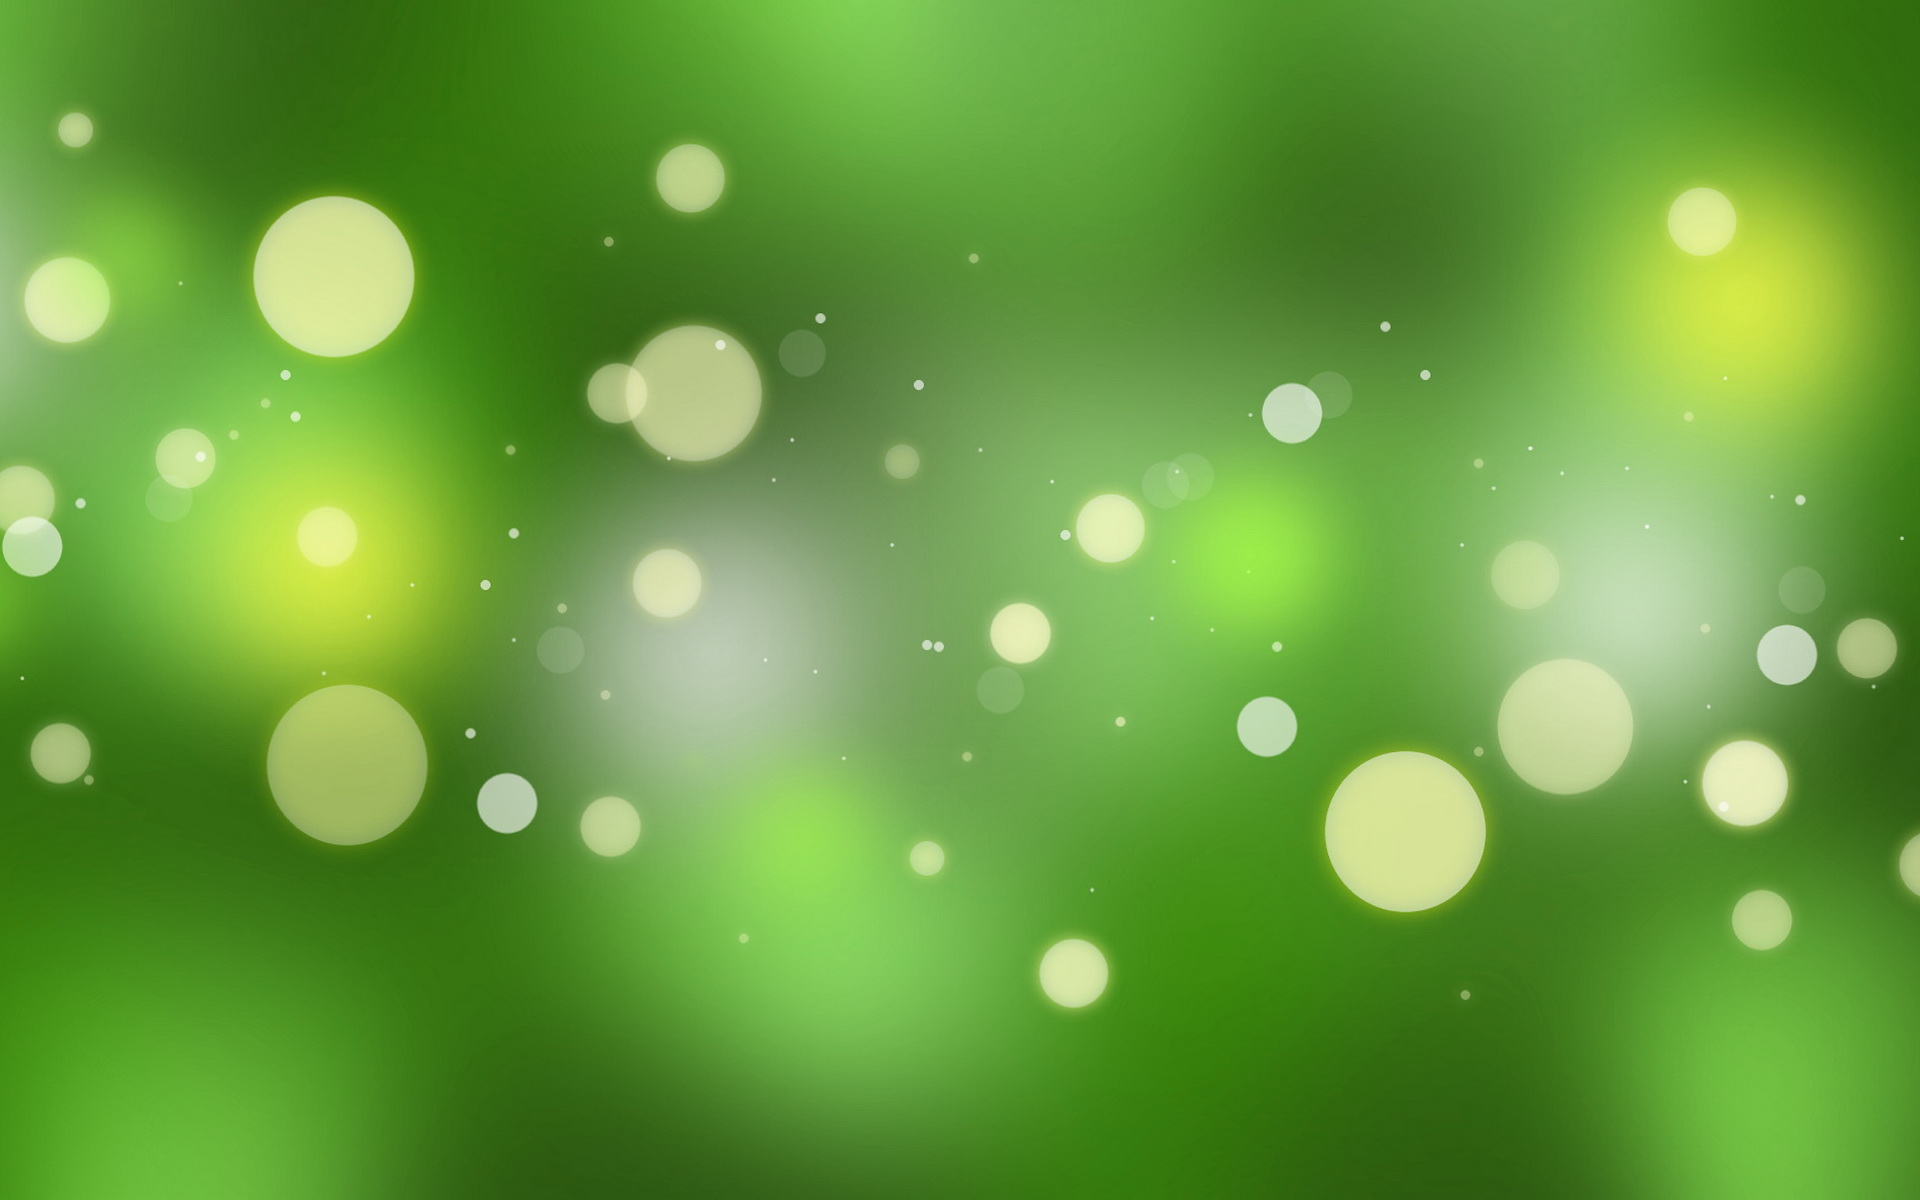 唯美荧光光斑 光圈iOS朦胧绿高清幻灯片背景